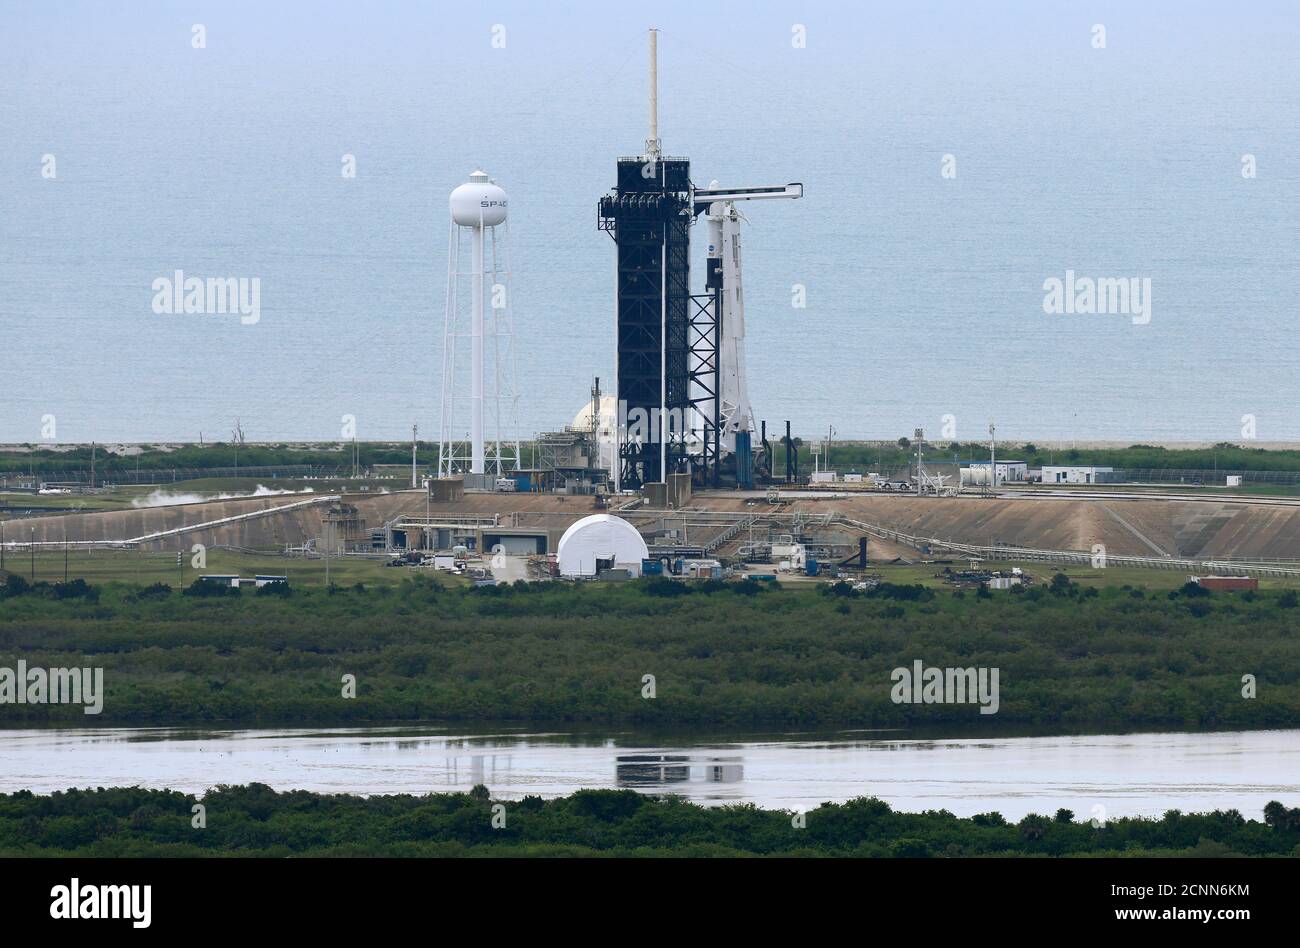 Un cohete SpaceX Falcon 9 y la nave espacial Crew Dragon que transporta a los astronautas de la NASA Douglas Hurley y Robert Behnken se ve antes del lanzamiento programado de la misión SpaceX Demo-2 de la NASA a la Estación Espacial Internacional desde el Centro Espacial Kennedy de la NASA en Cabo Cañaveral, Florida, EE.UU. 27 de mayo de 2020. REUTERS/Joe Skipper Foto de stock